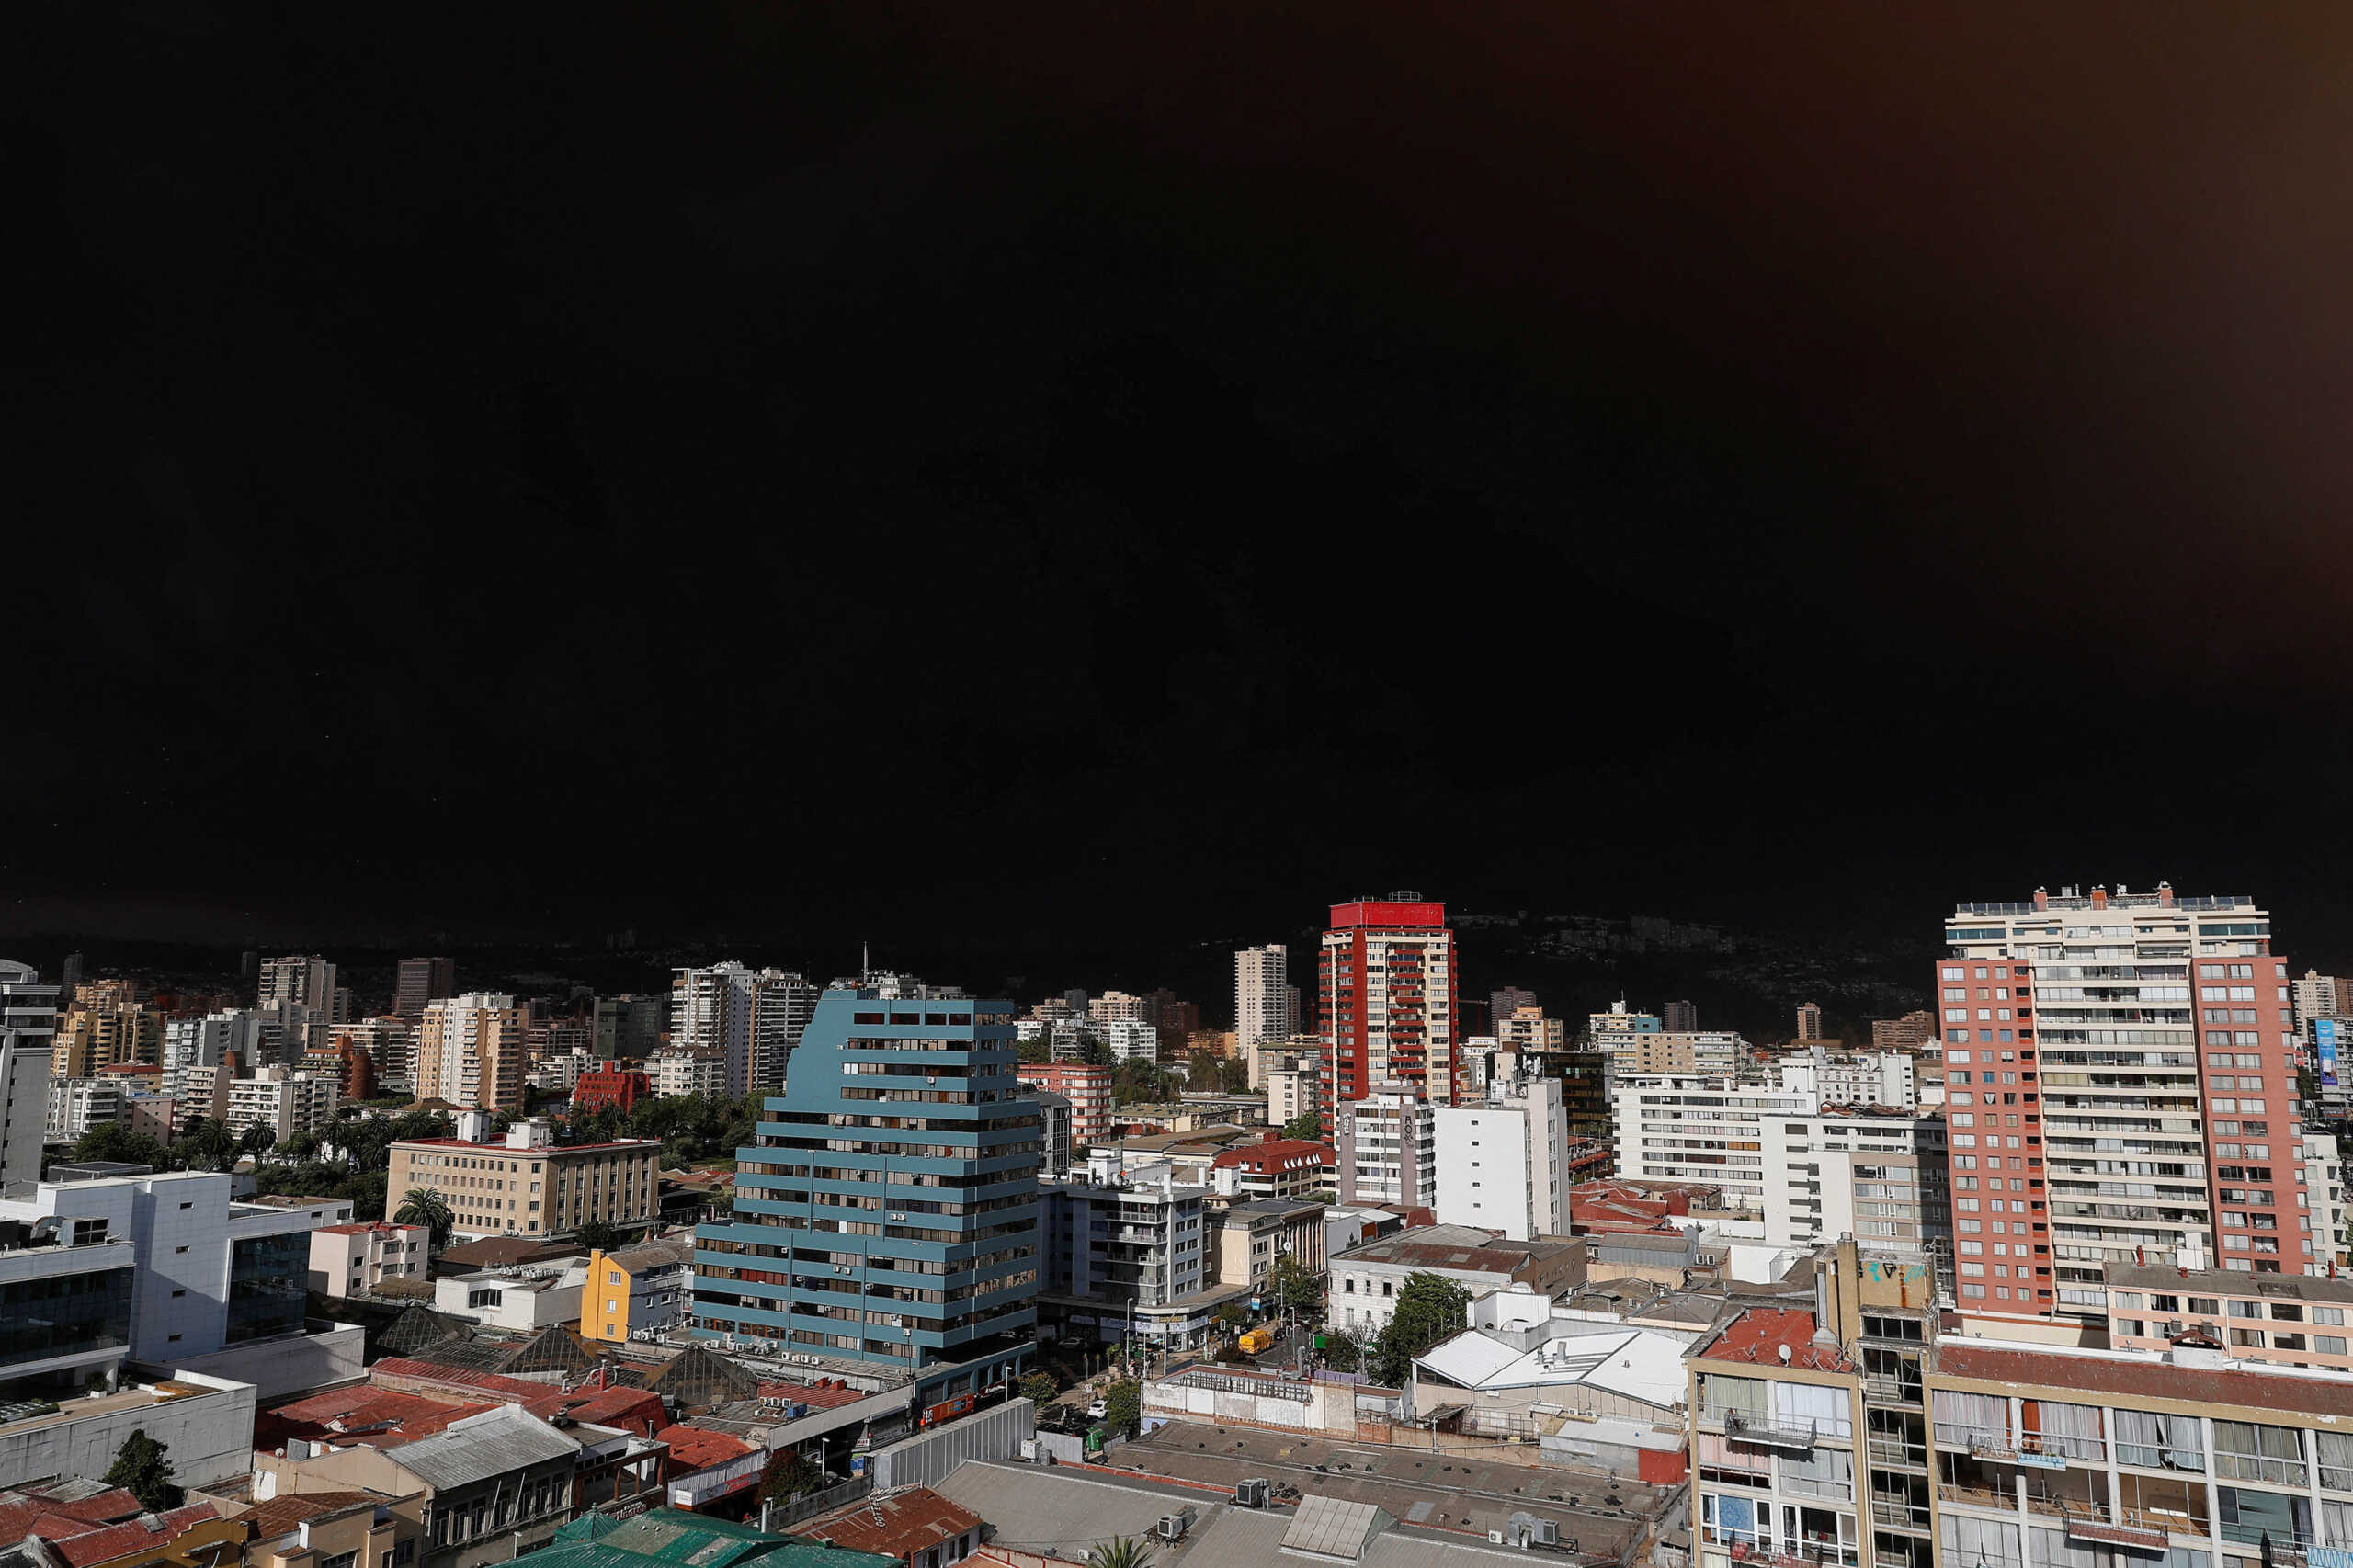 Χιλή: Τουλάχιστον 19 νεκροί από φωτιές που κατακαίνε το Βαλπαραΐσο – Εικόνες αποκάλυψης